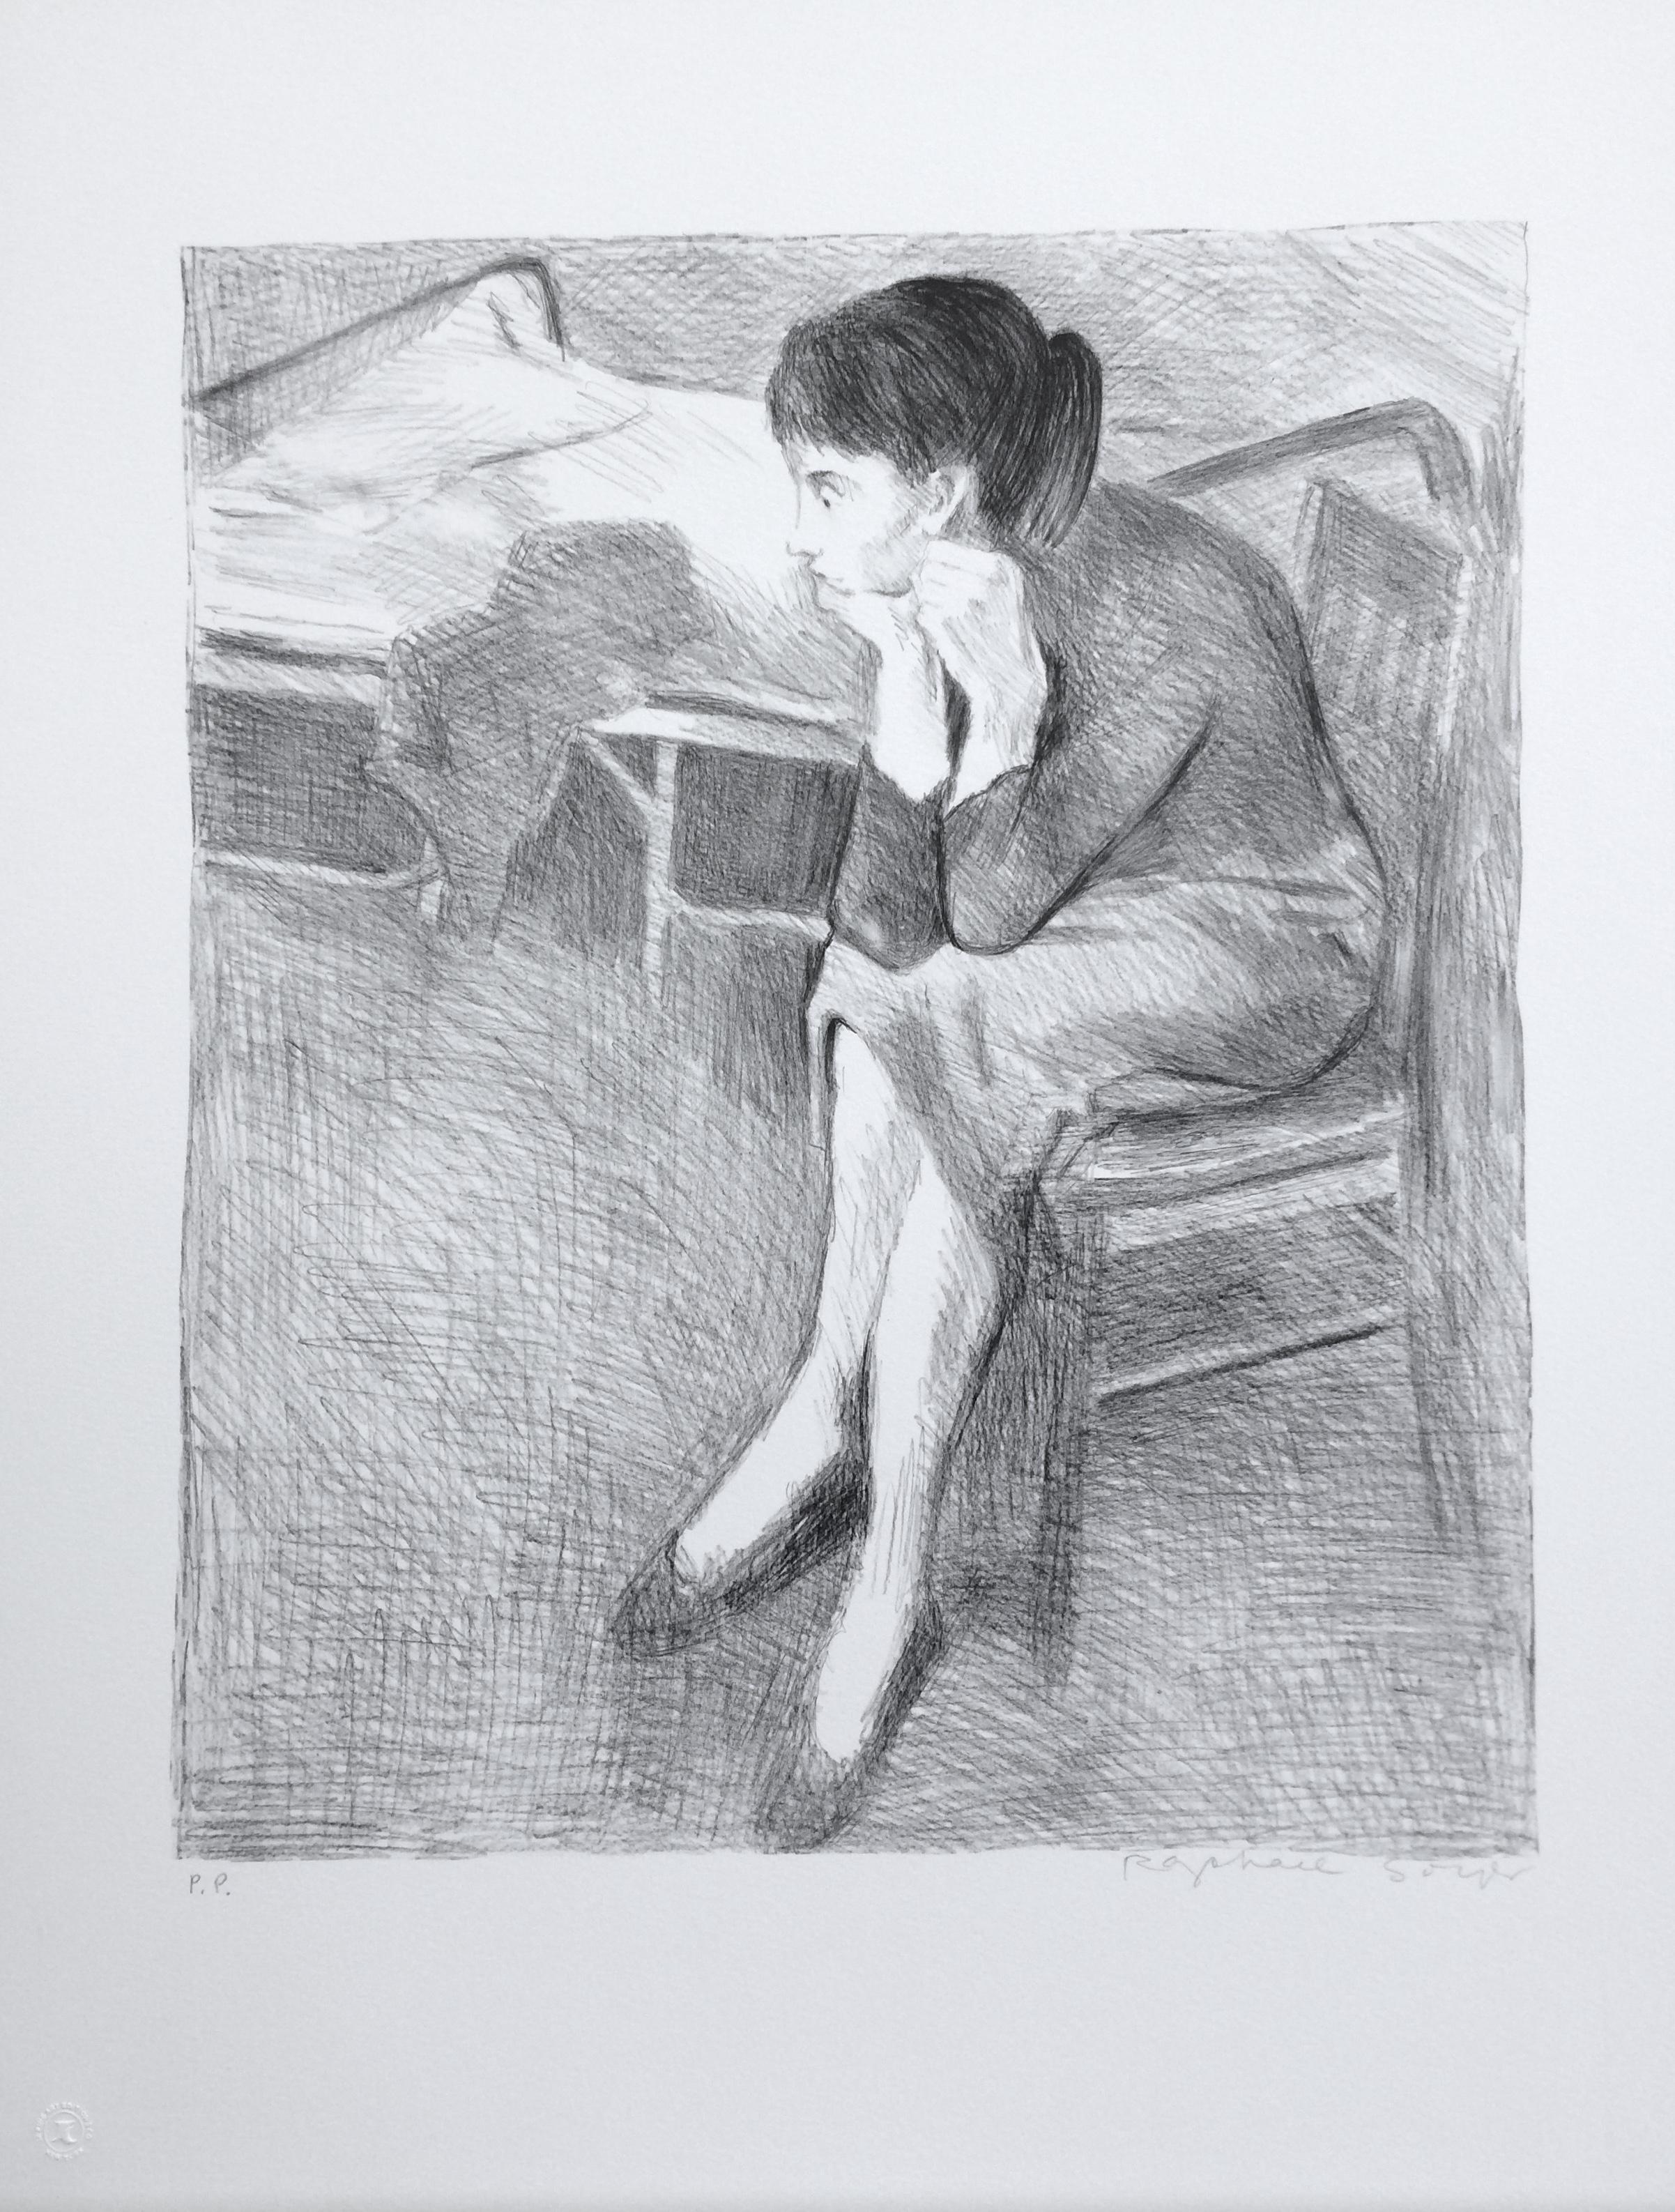 SEATED WOMAN NEAR A BED ist eine originale handgezeichnete (nicht digital oder fotoreproduzierte) Lithographie in limitierter Auflage des Künstlers Raphael Soyer - russischer/amerikanischer Maler des Sozialrealismus, 1899-1987. Gedruckt in